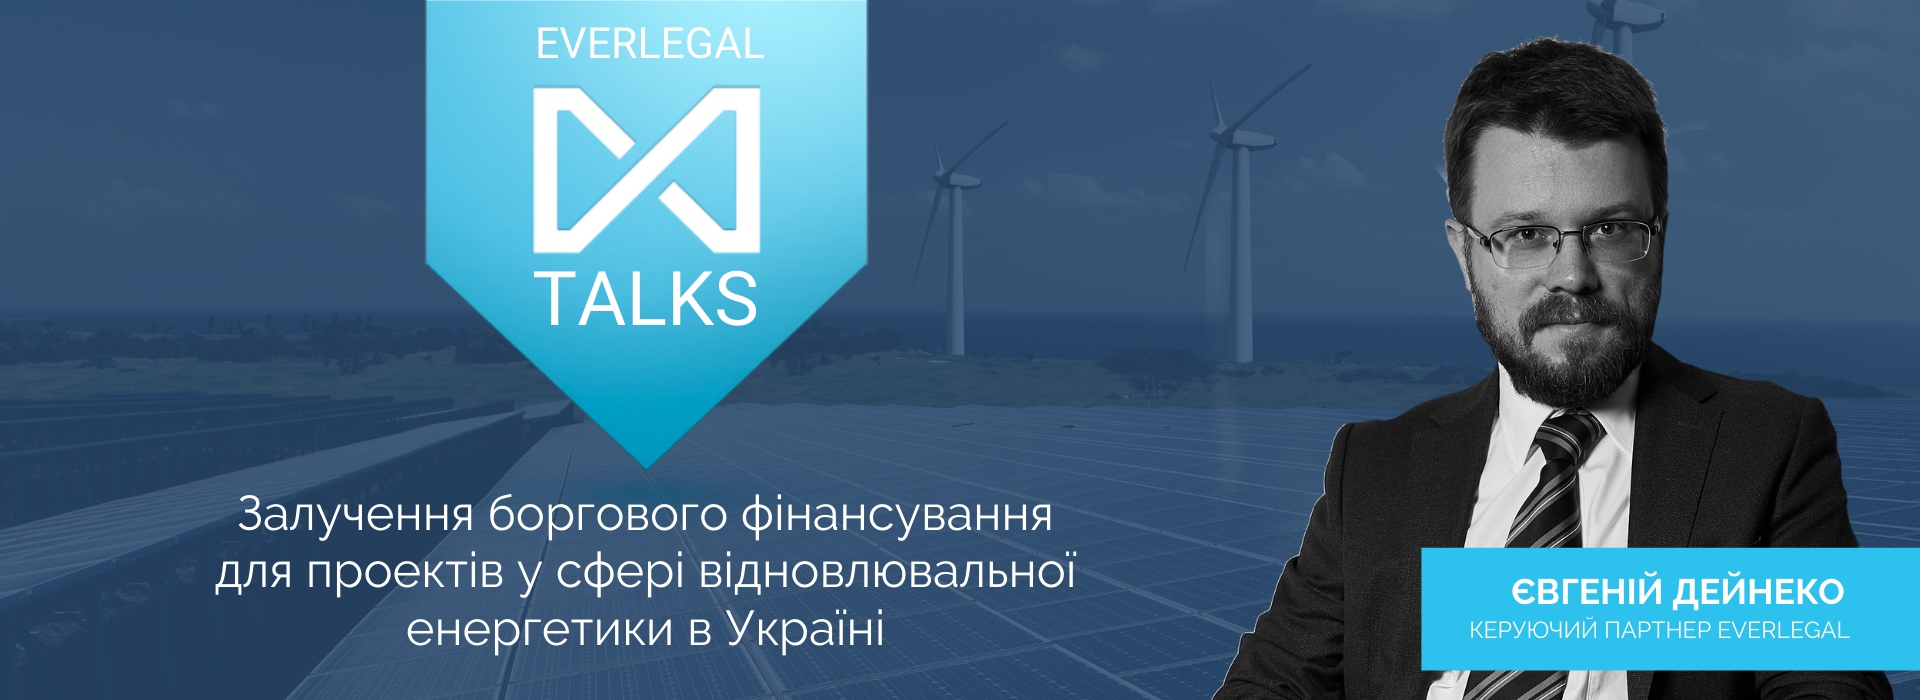 EverlegalTalks: Євгеній Дейнеко про залучення боргового фінансування для проектів у сфері відновлювальної енергетики в Україні